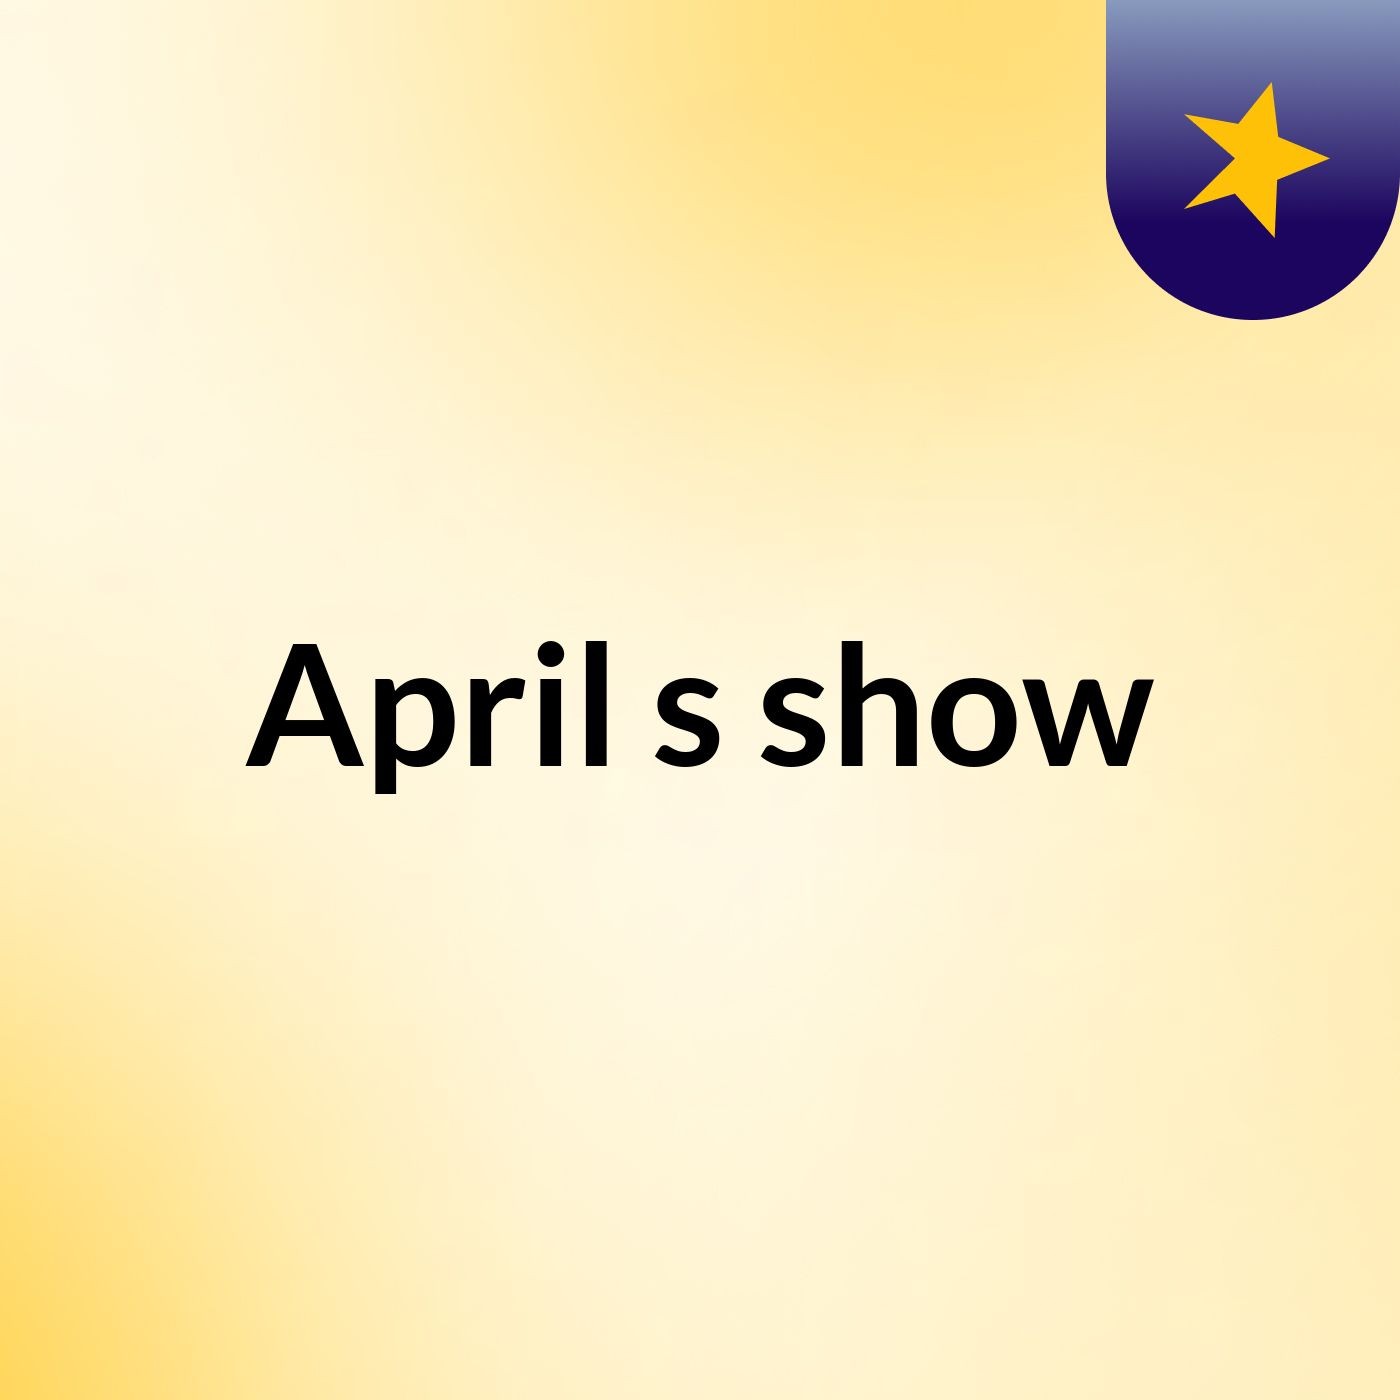 Episode 4 - April's show